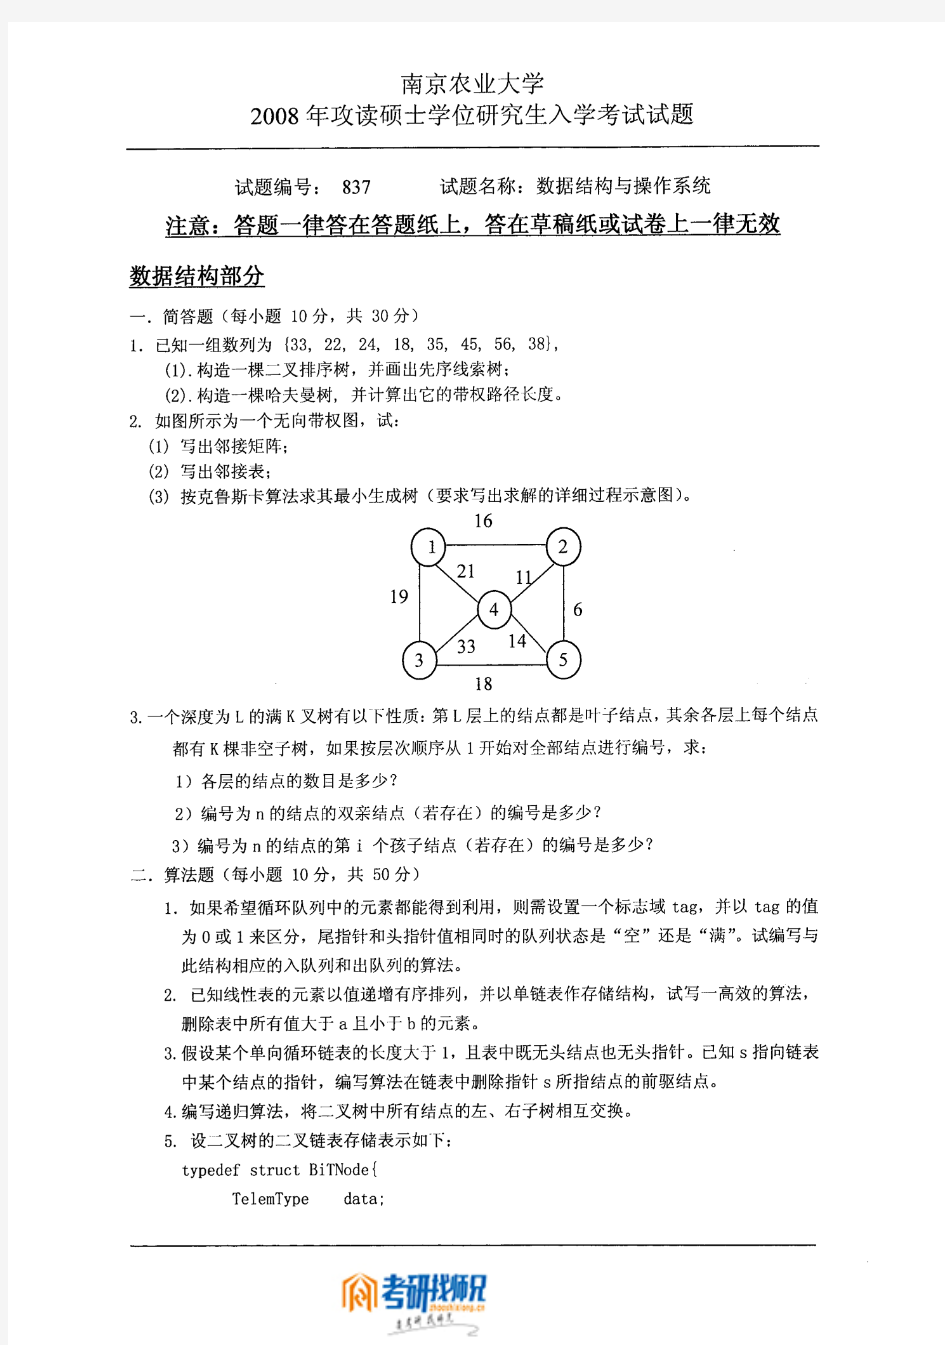 南京农业大学数据结构与操作系统2008真题